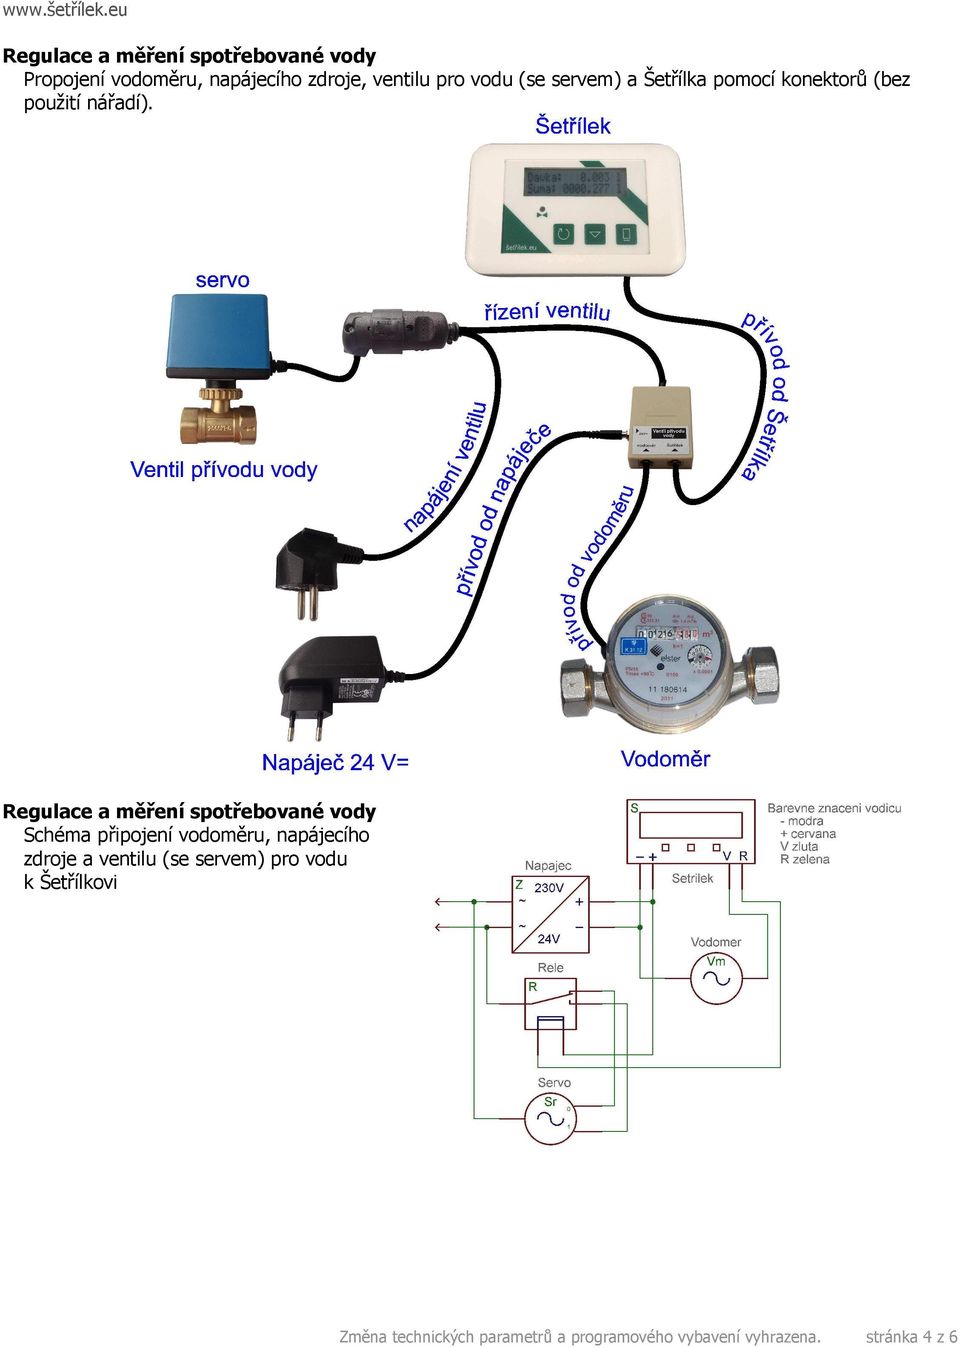 Schéma připojení vodoměru, napájecího zdroje a ventilu (se servem) pro